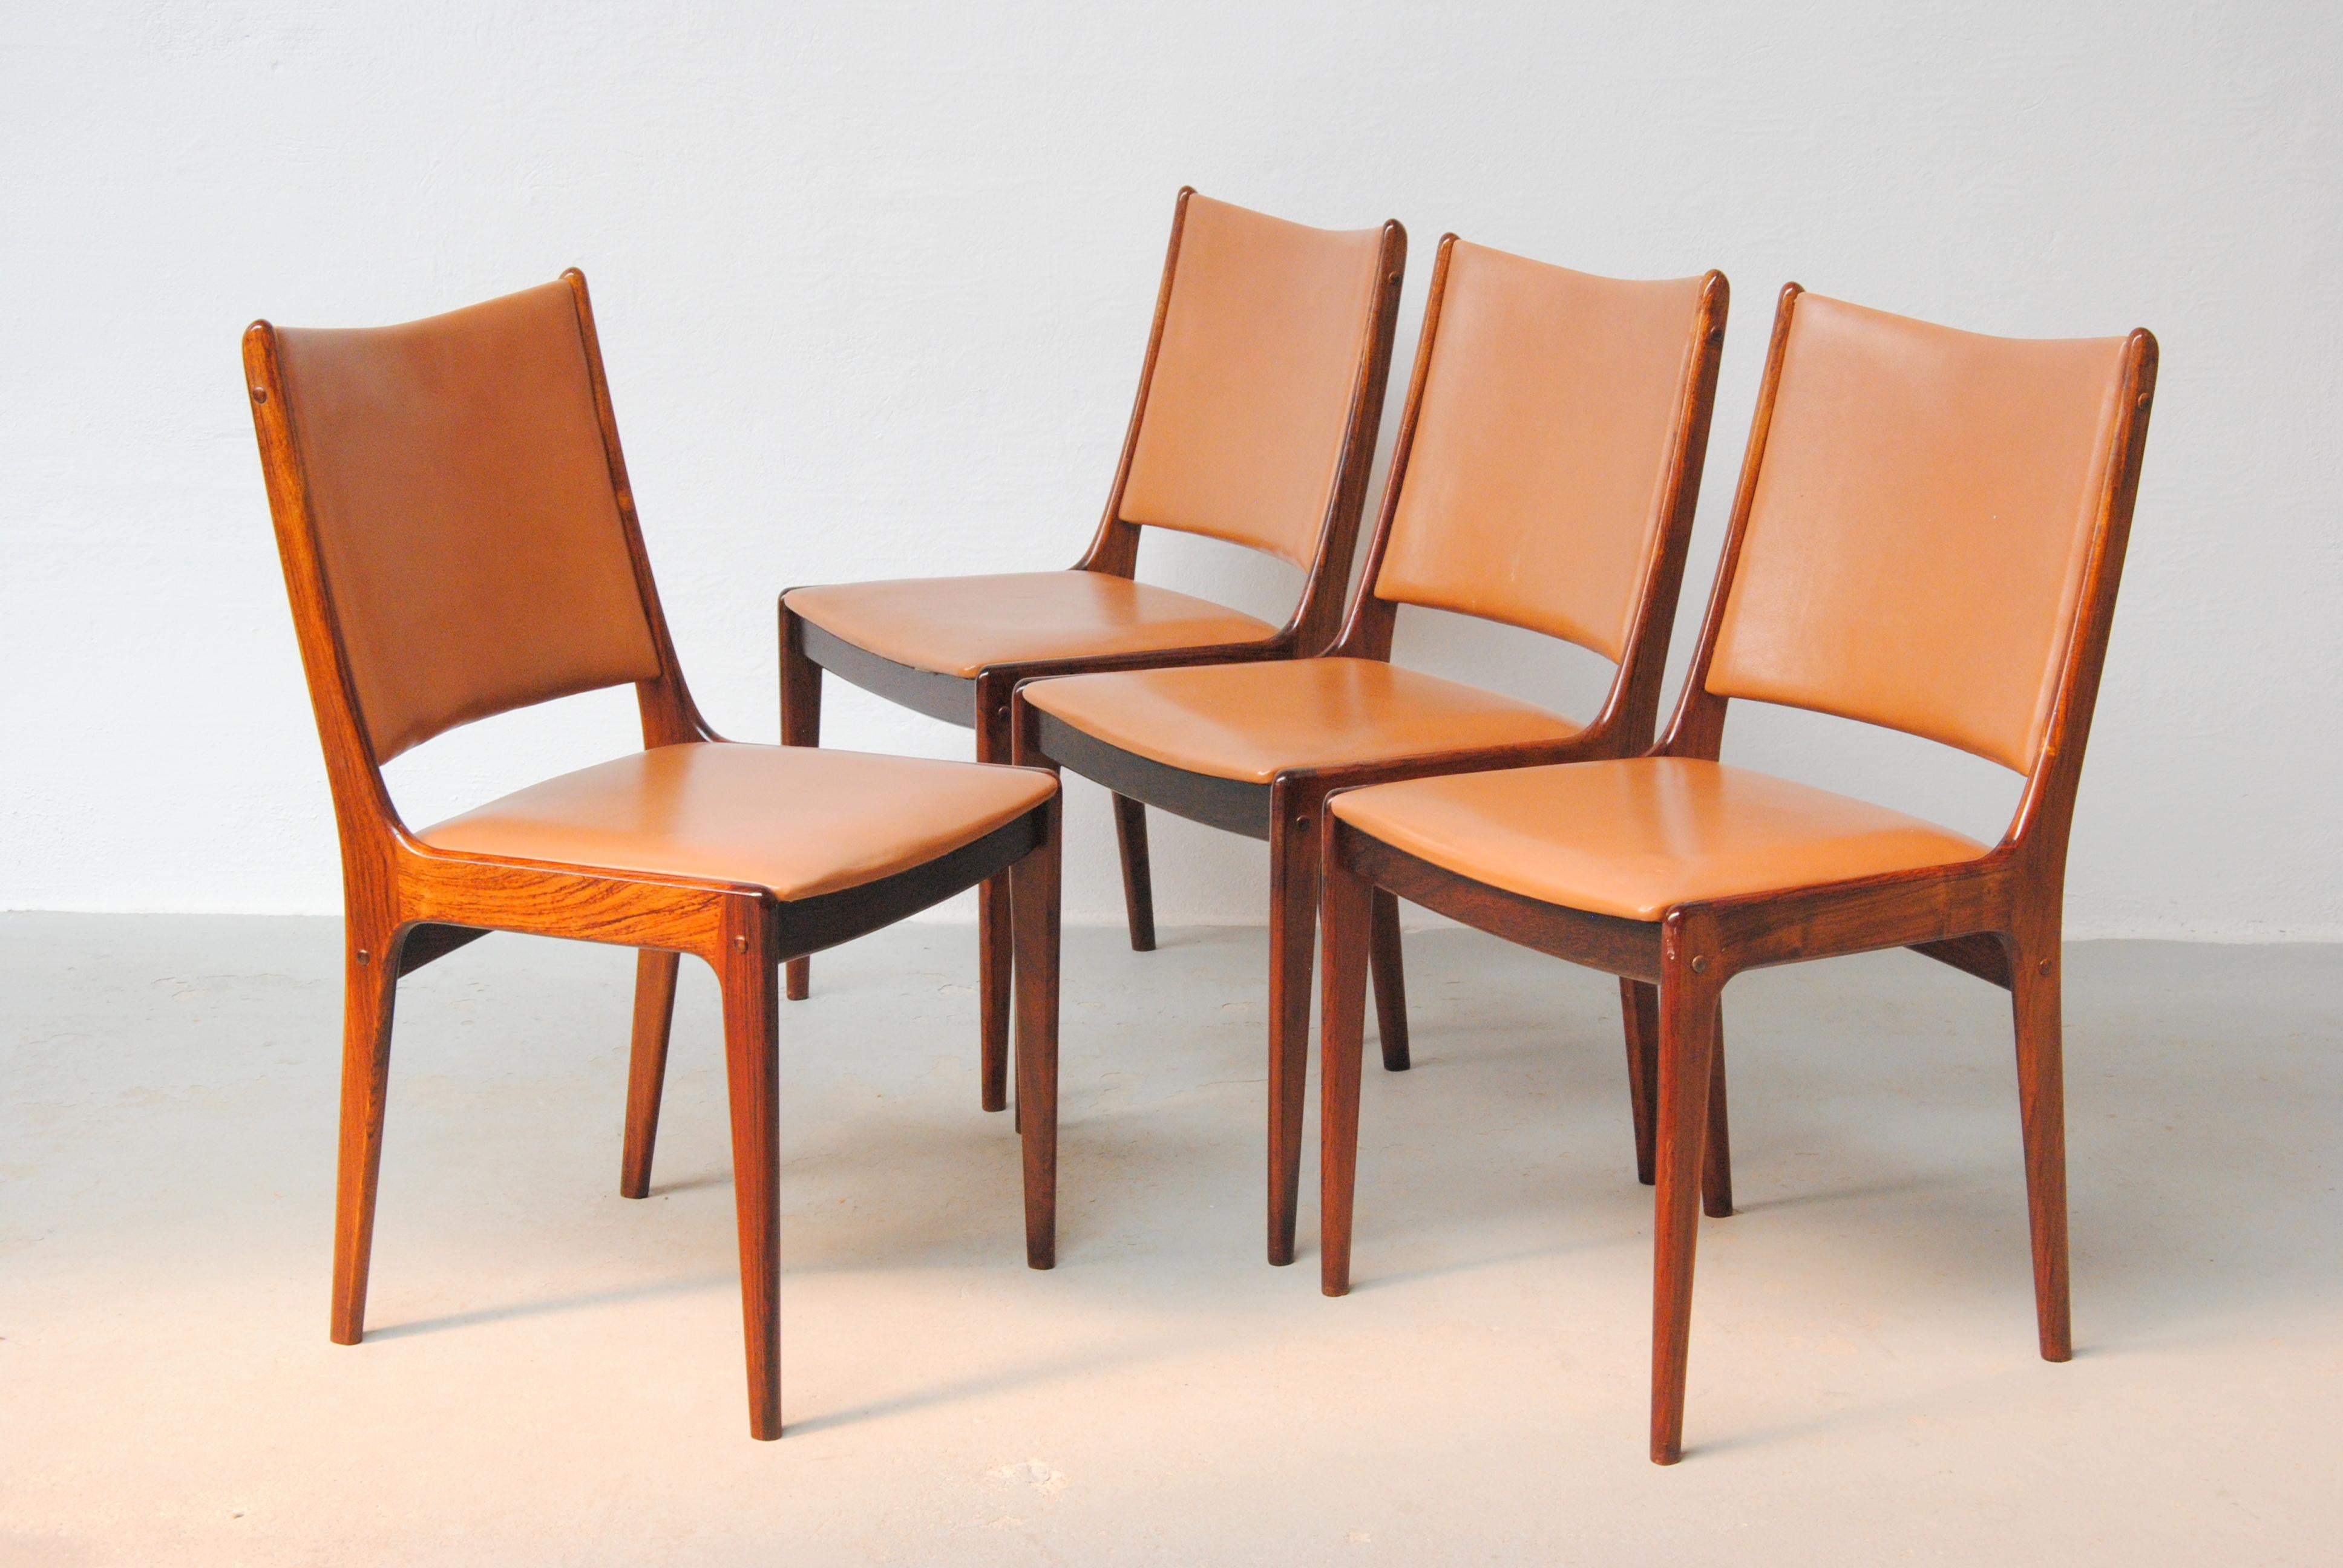 Zwölf vollständig restaurierte Johannes-Andersen-Esszimmerstühle aus Palisanderholz aus den 1960er Jahren von Uldum Møbler, Dänemark.

Die Esszimmerstühle zeichnen sich durch ein schlichtes und elegantes Design aus, das sich in viele Umgebungen